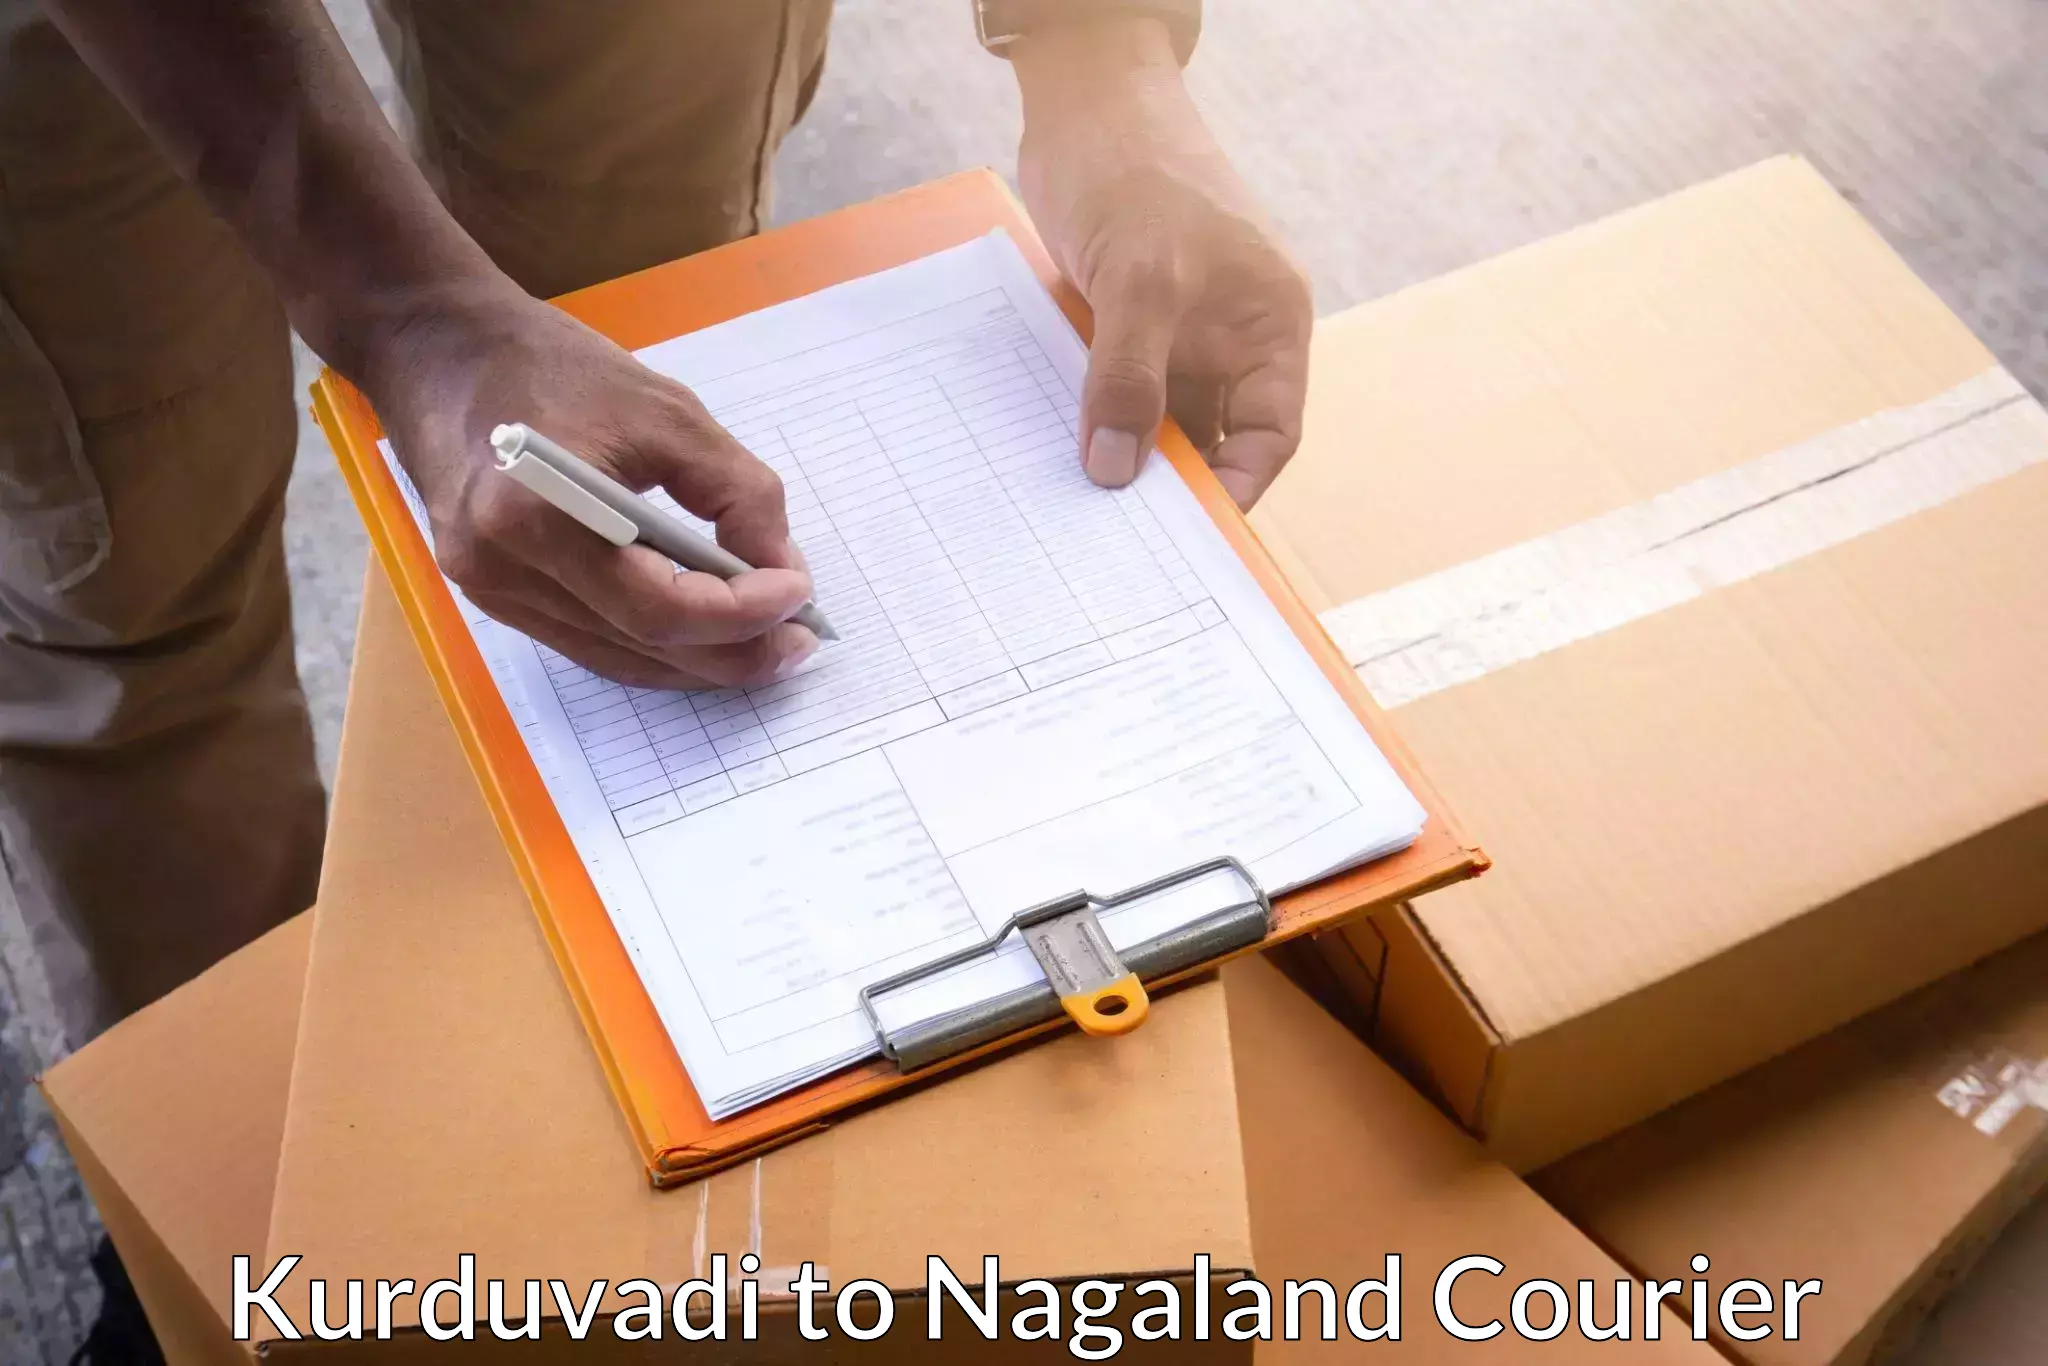 Efficient logistics management in Kurduvadi to Peren